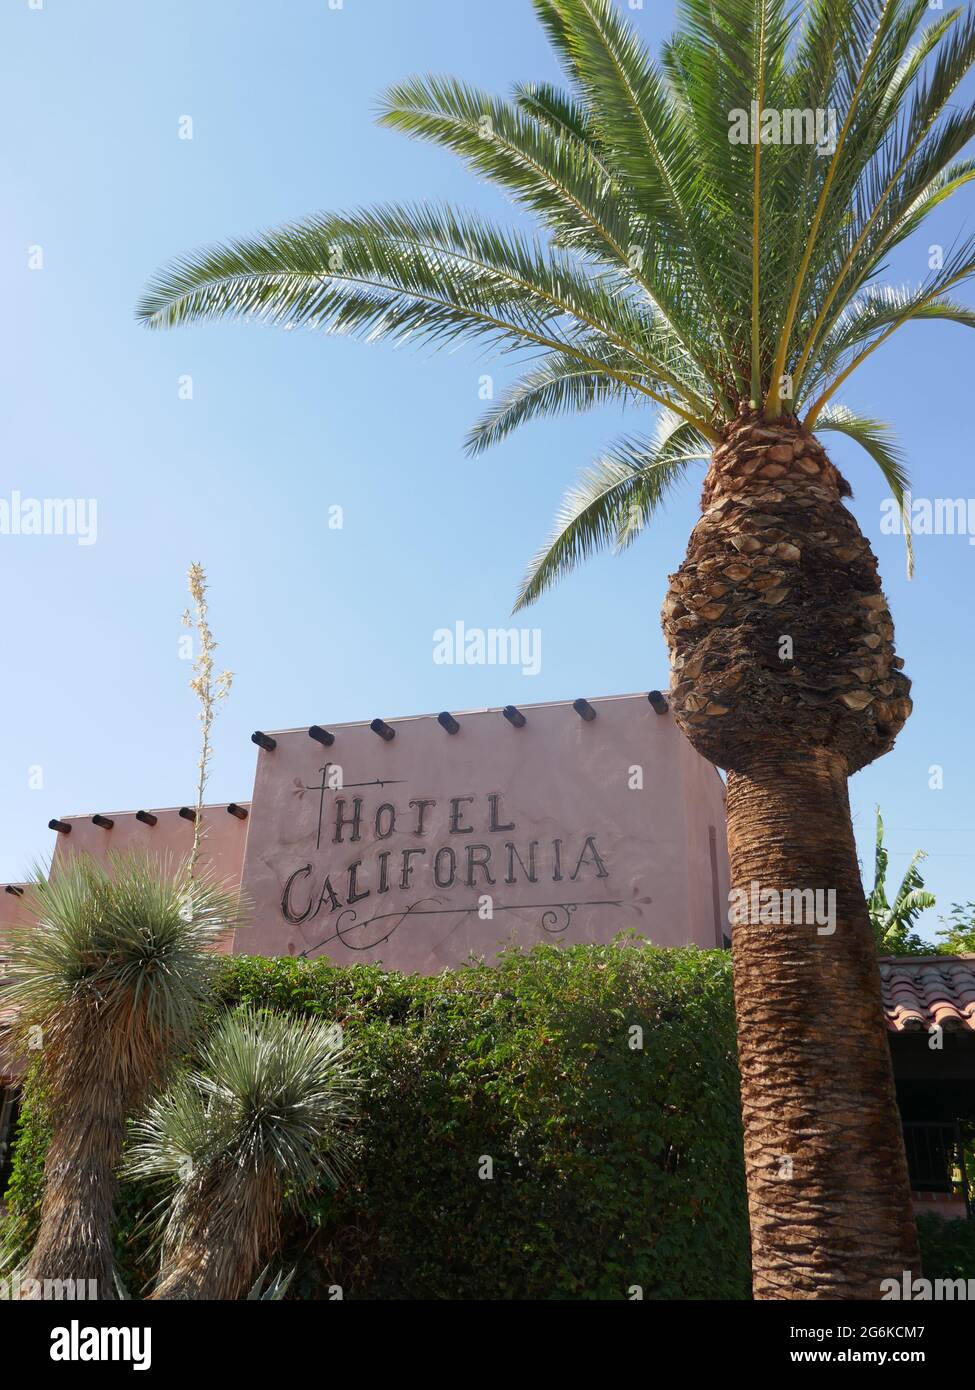 Palm Springs, California, USA 24. Juni 2021 EINE allgemeine Sicht auf die Atmosphäre des Hotels California am 424 E. Palm Canyon Drive am 24. Juni 2021 in Palm Springs, Kalifornien, USA. Foto von Barry King/Alamy Stockfoto Stockfoto